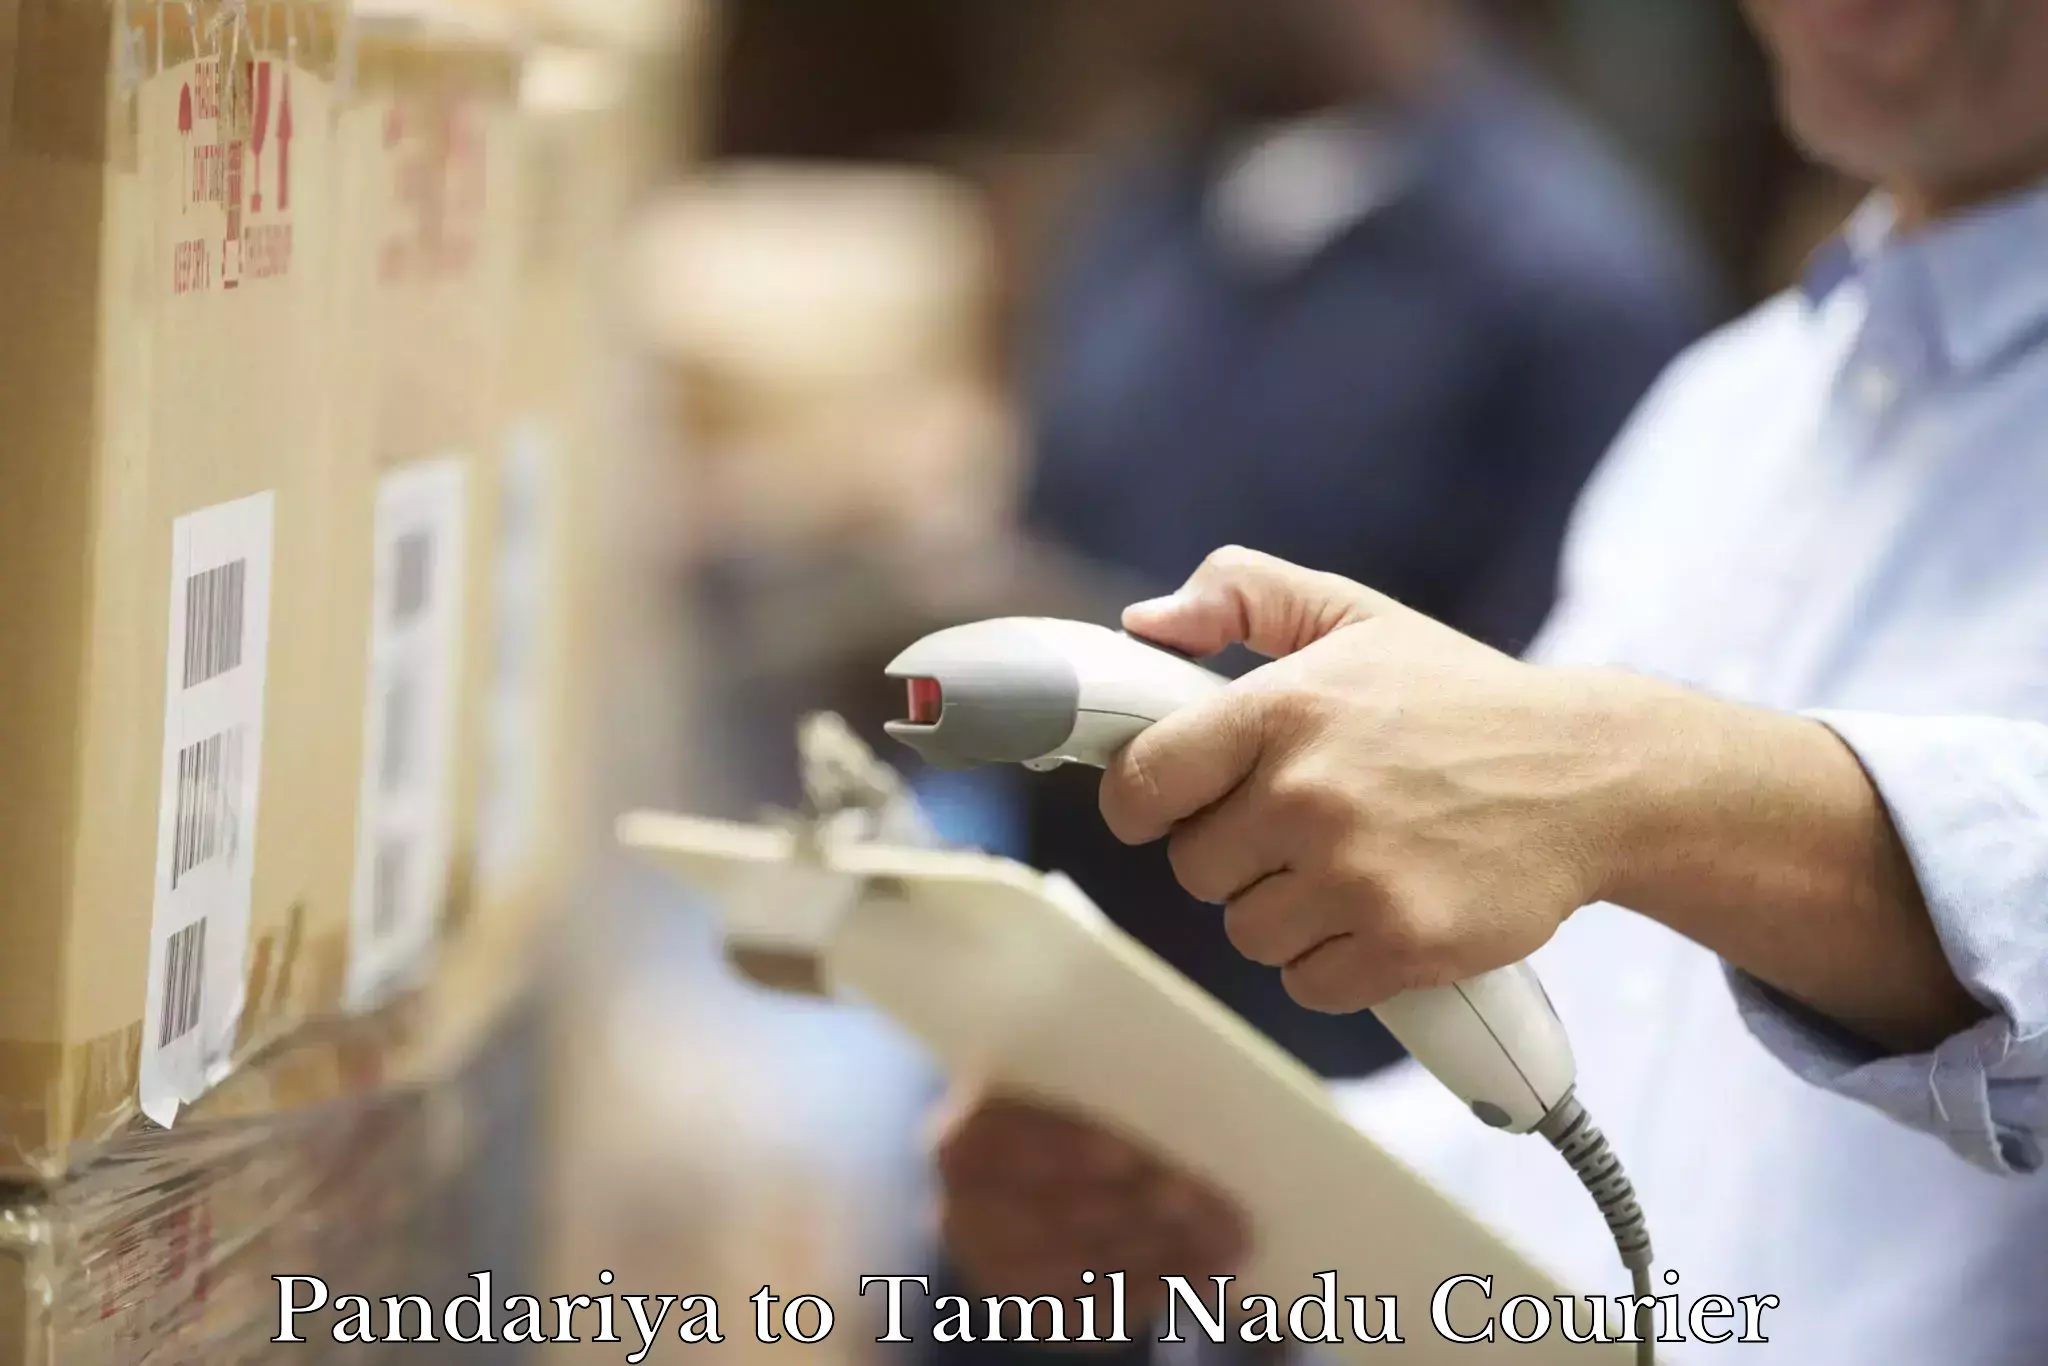 Speedy delivery service Pandariya to Thiruvarur